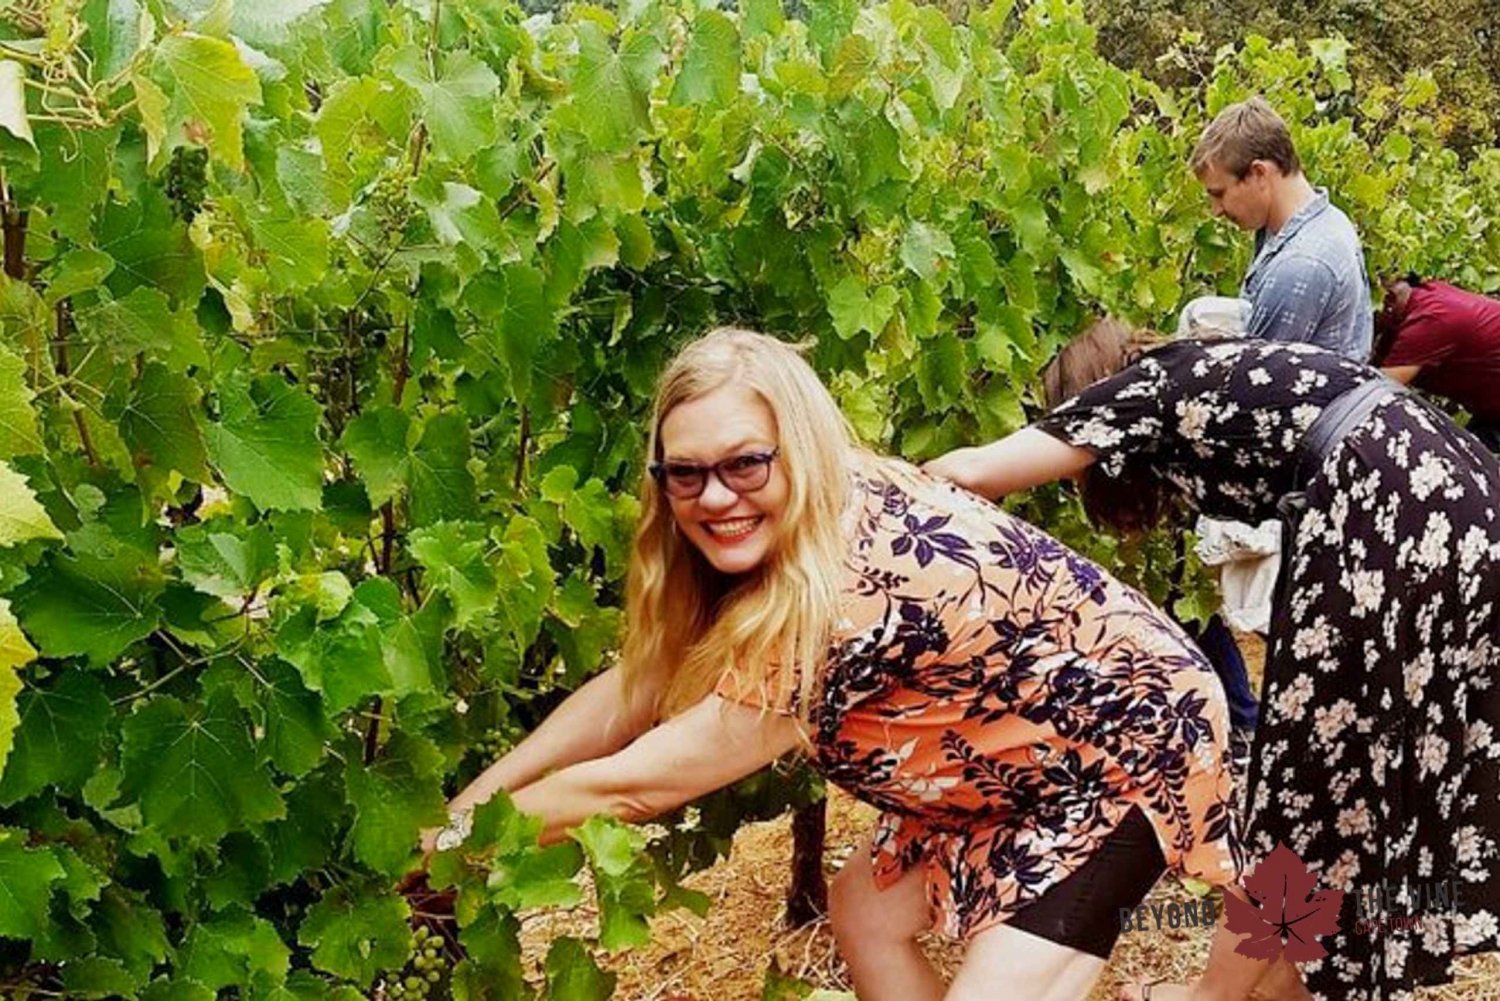 Stellenbosch: Tour esclusivo del vino - Assemblaggio e imbottigliamento del proprio vino